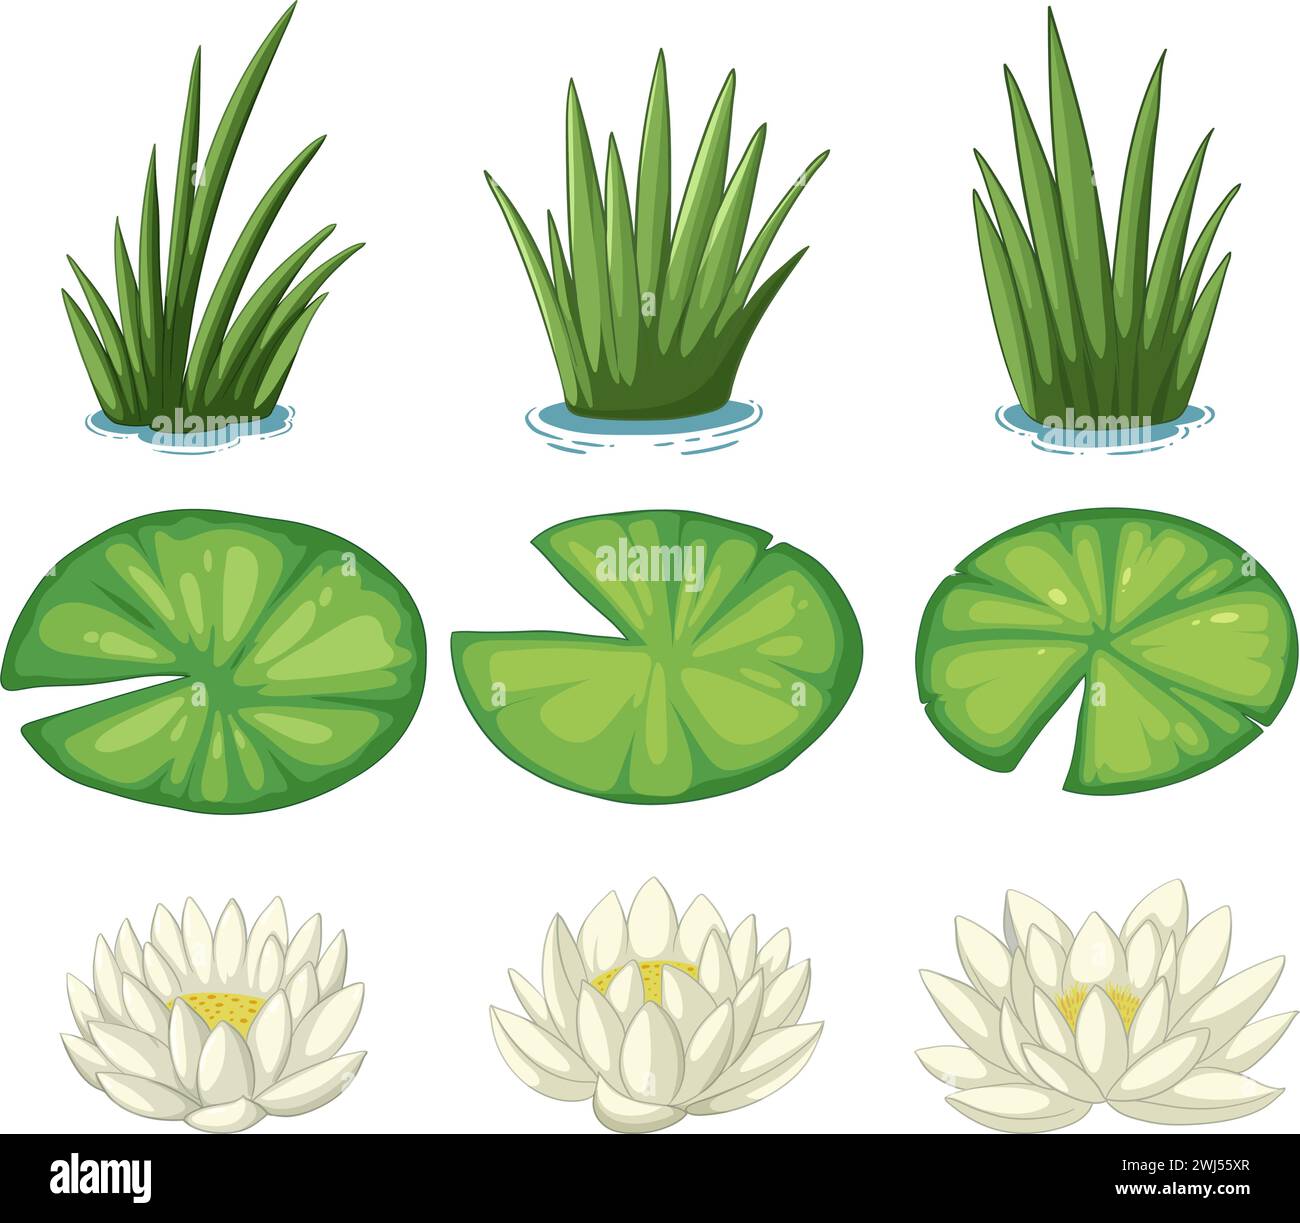 Illustrazioni vettoriali di varie piante idriche. Illustrazione Vettoriale